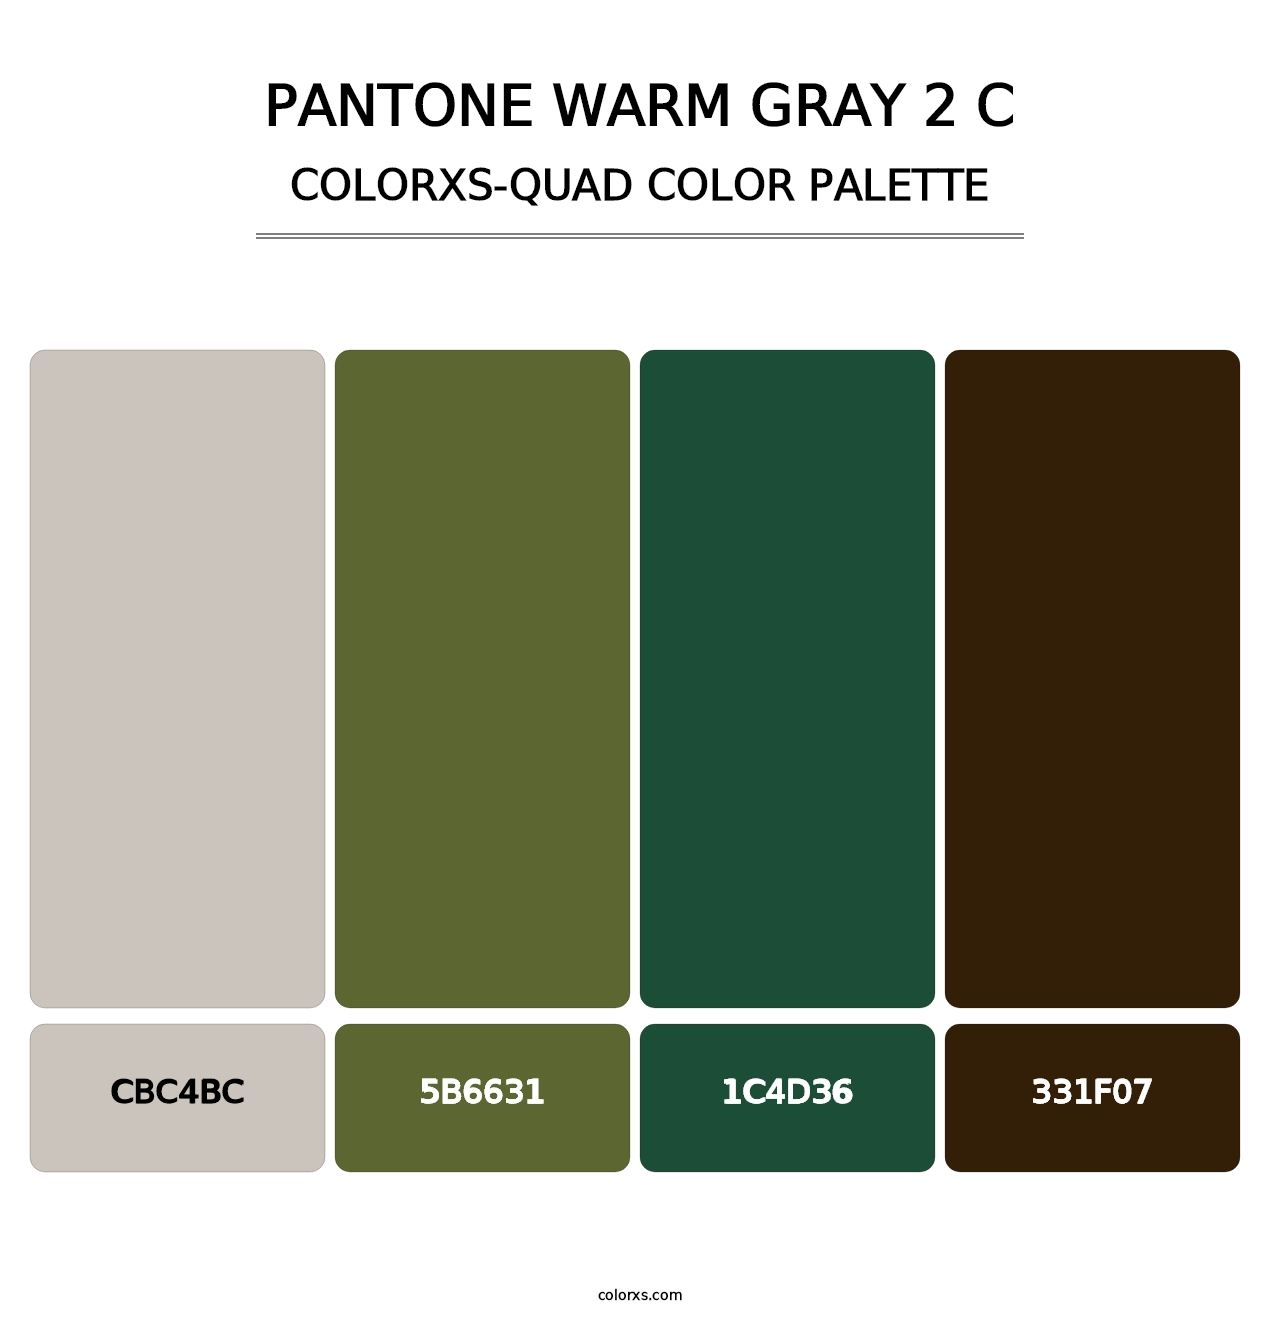 PANTONE Warm Gray 2 C - Colorxs Quad Palette